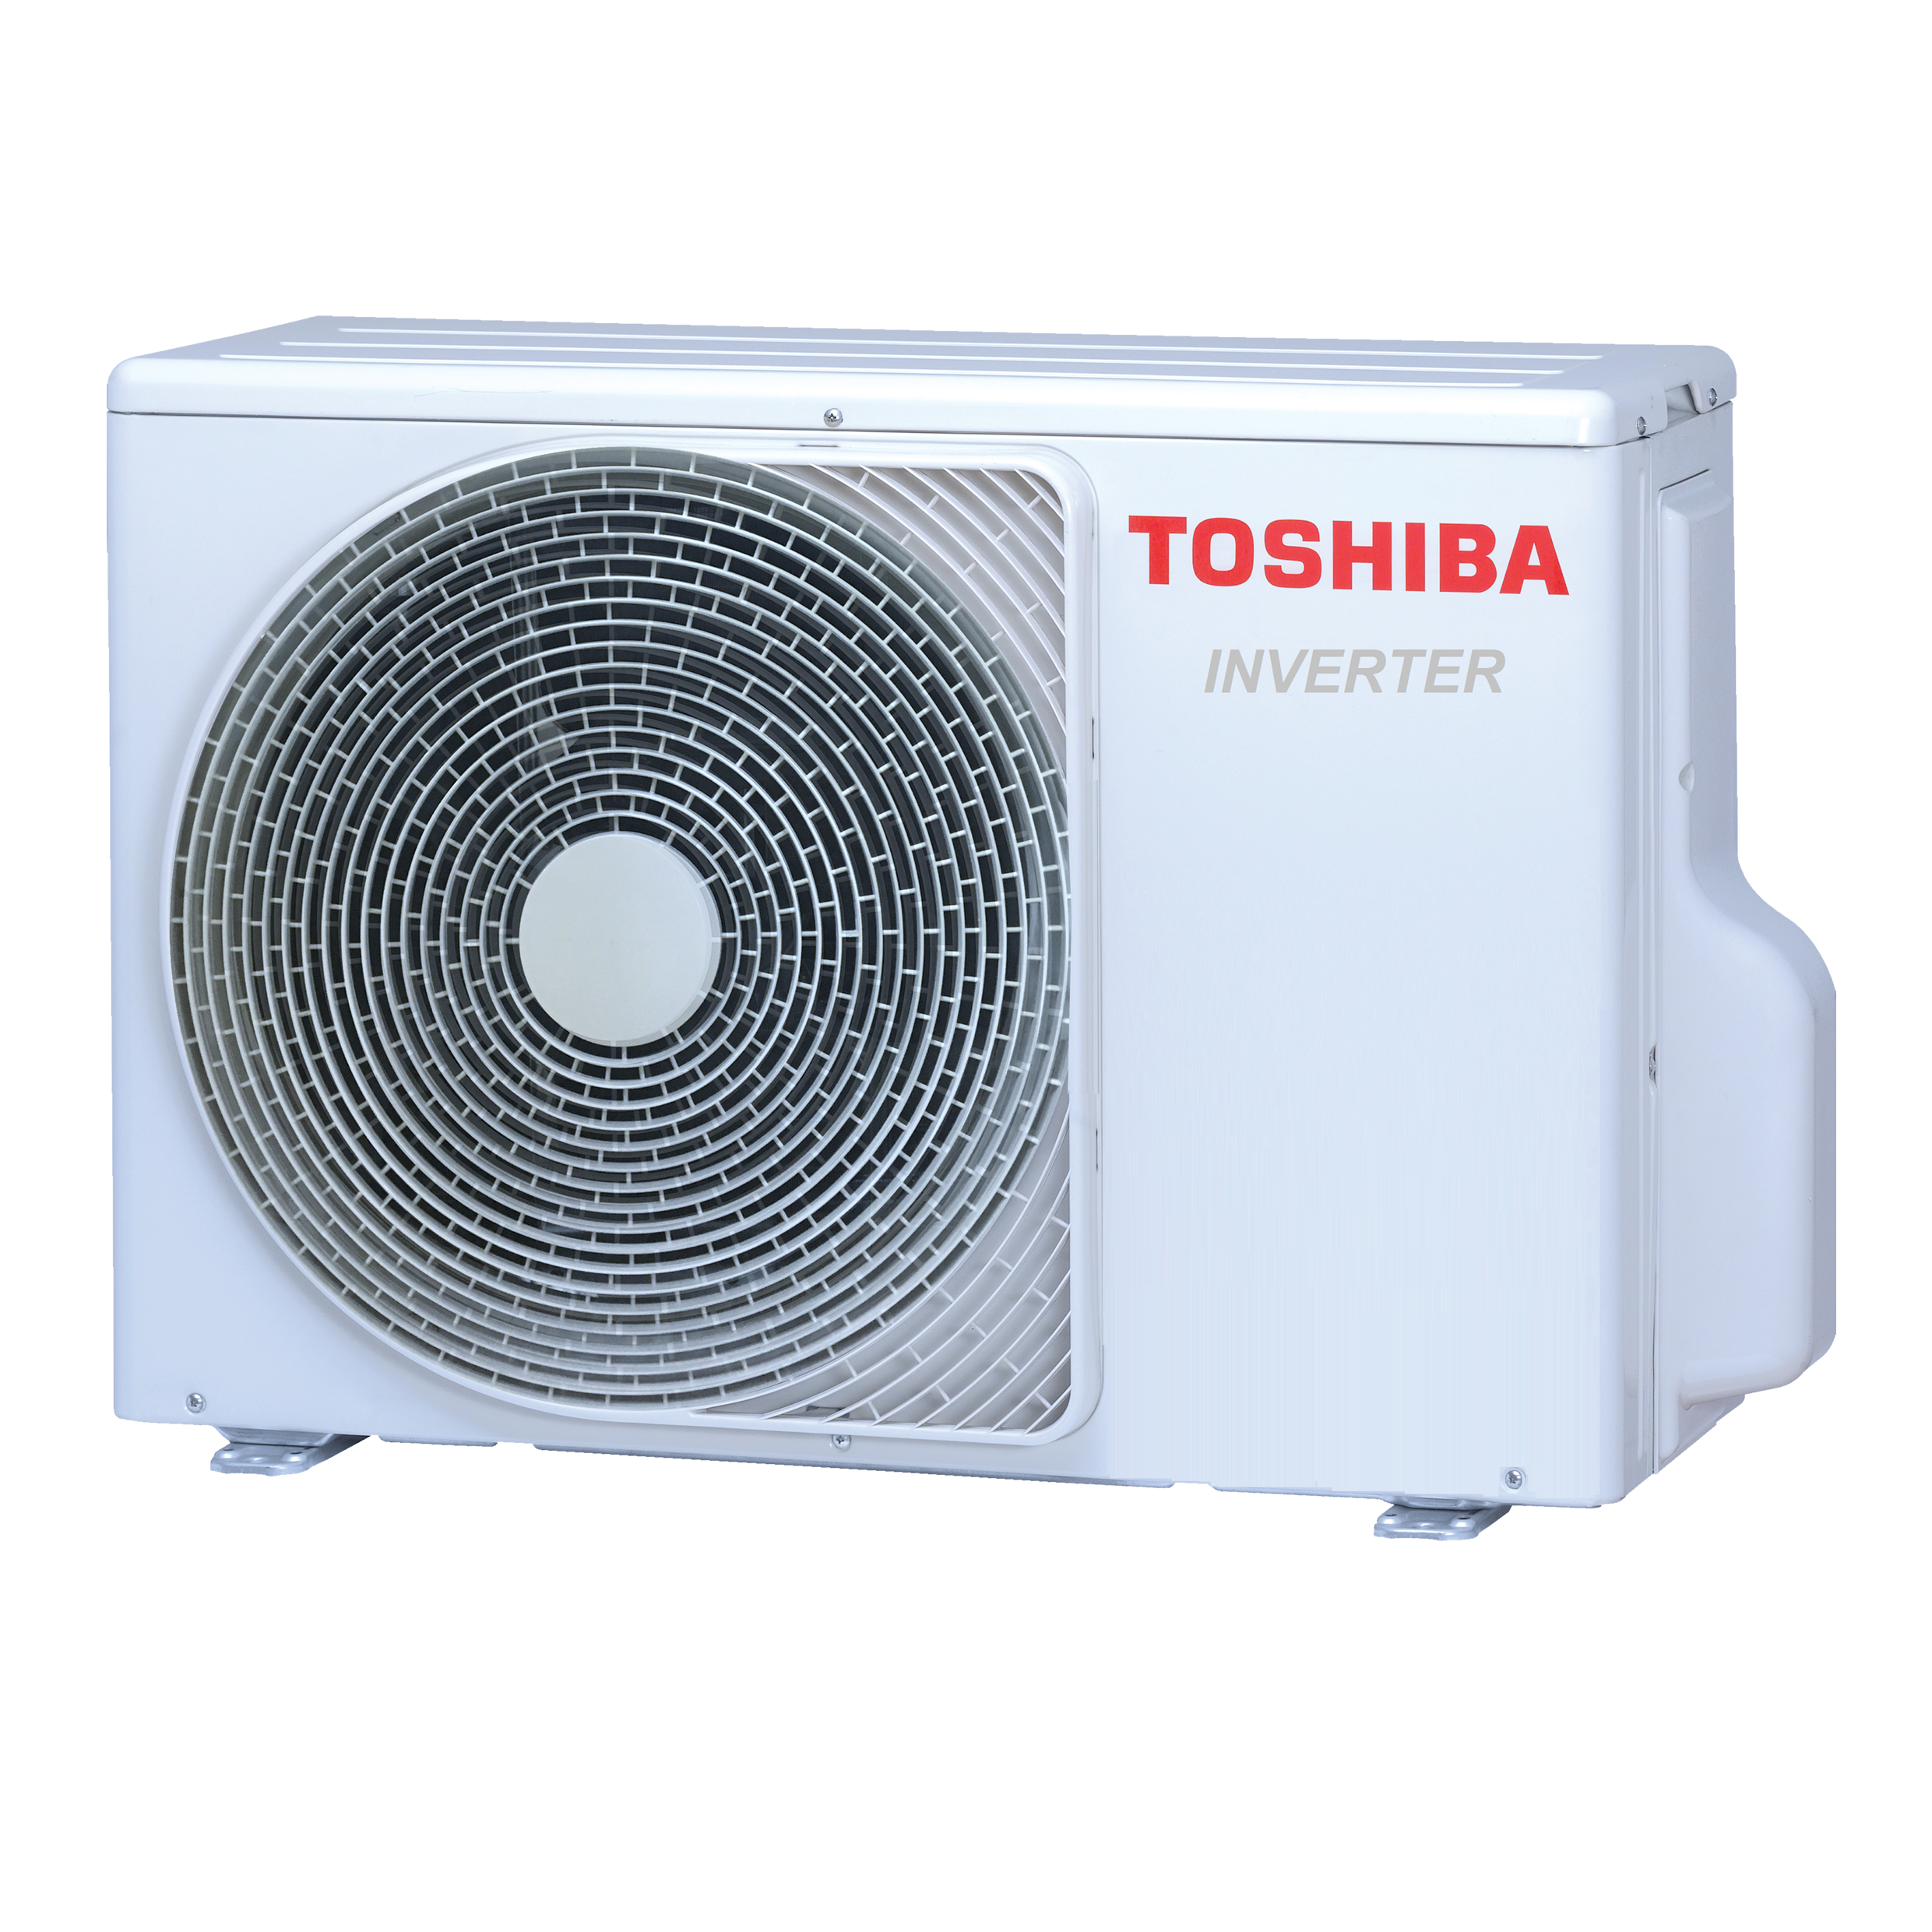 Išorinė inverter split tipo dalis Toshiba Optimum  (R32 freonas) 3,5/4,2 kW